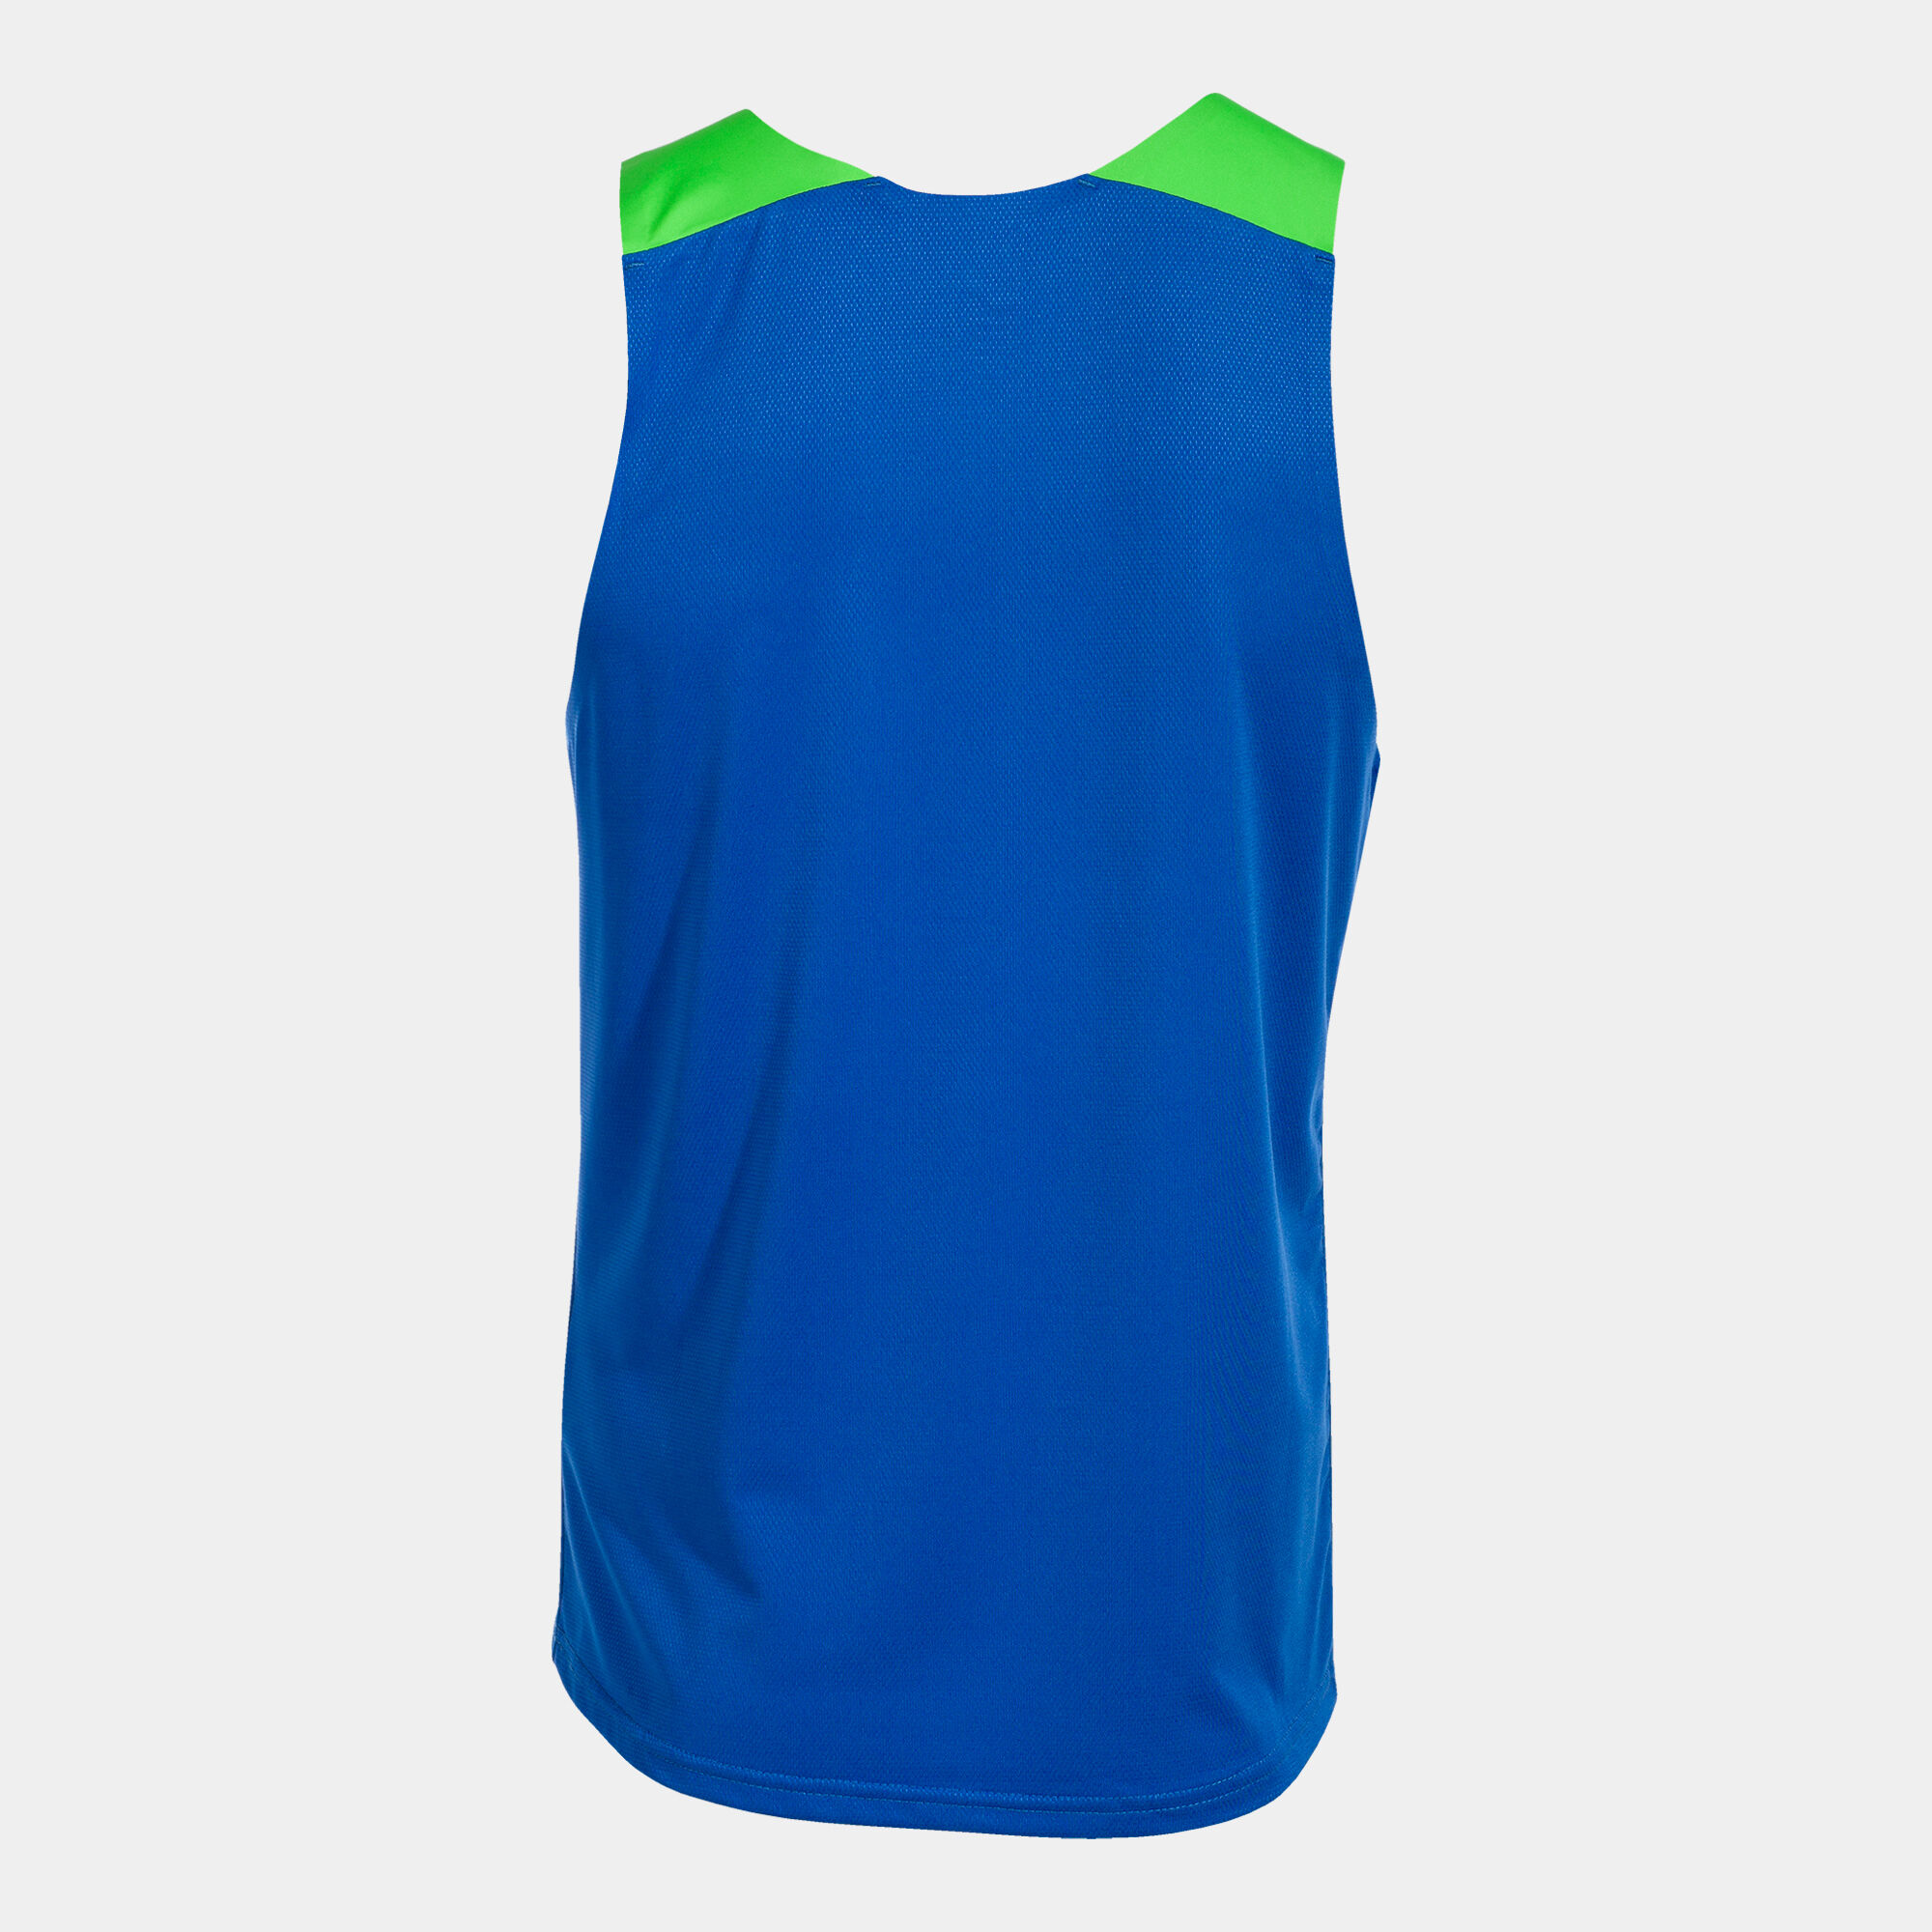 Sleeveless t-shirt man Elite X royal blue fluorescent green